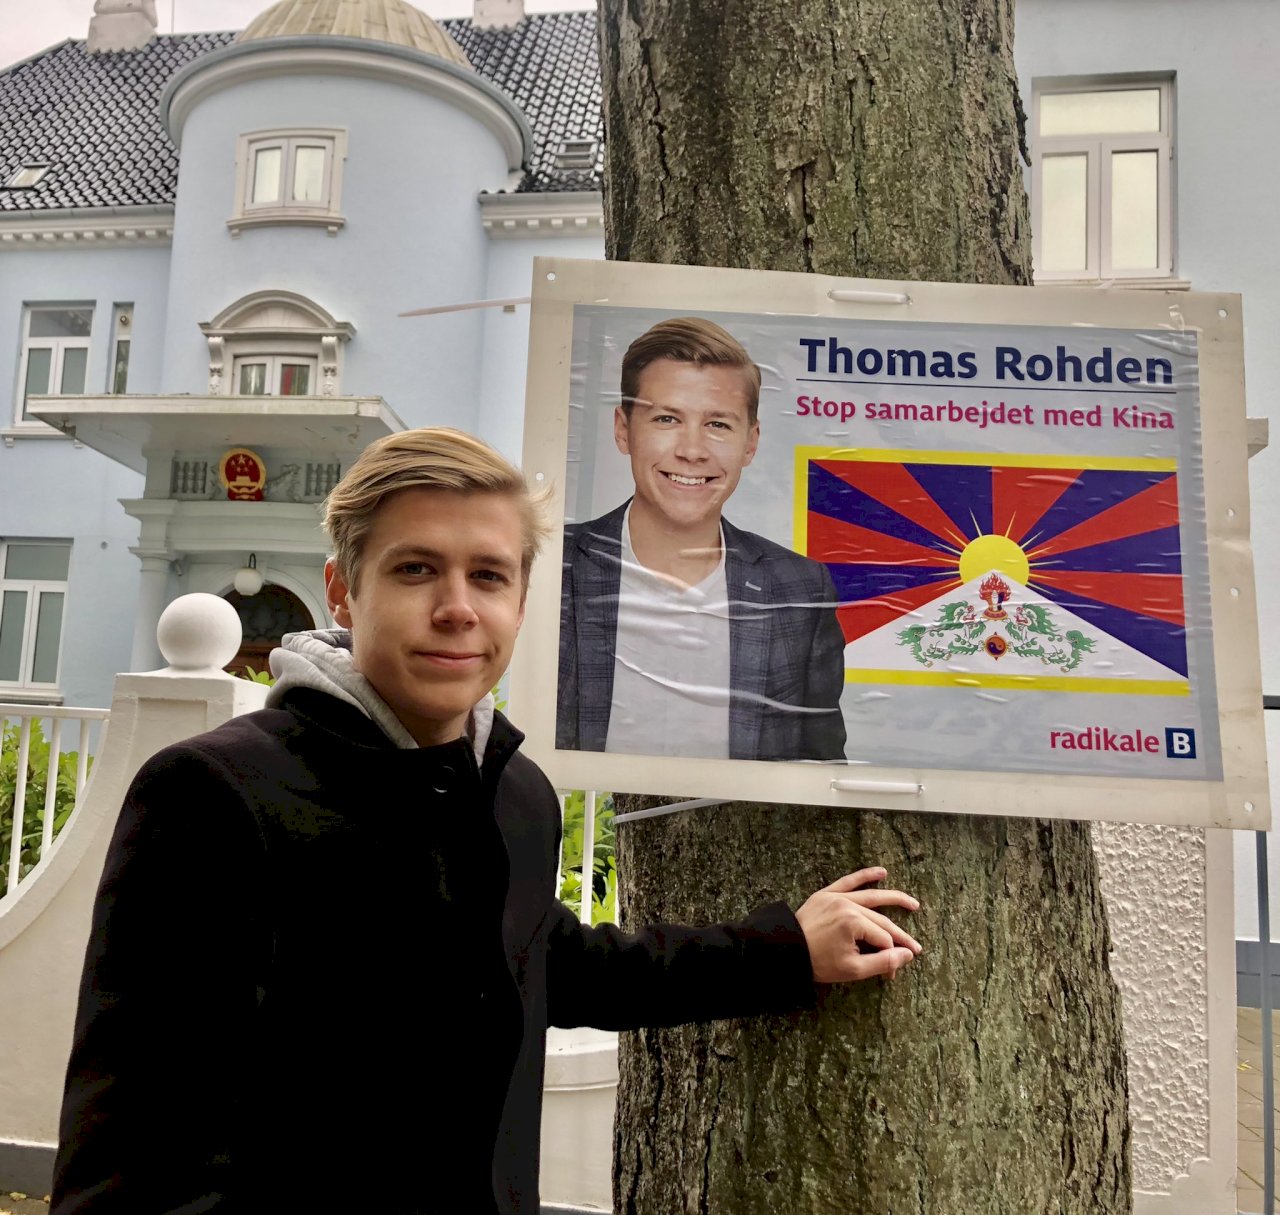 競選海報附西藏旗貼丹麥中國使館外 中國氣跳腳